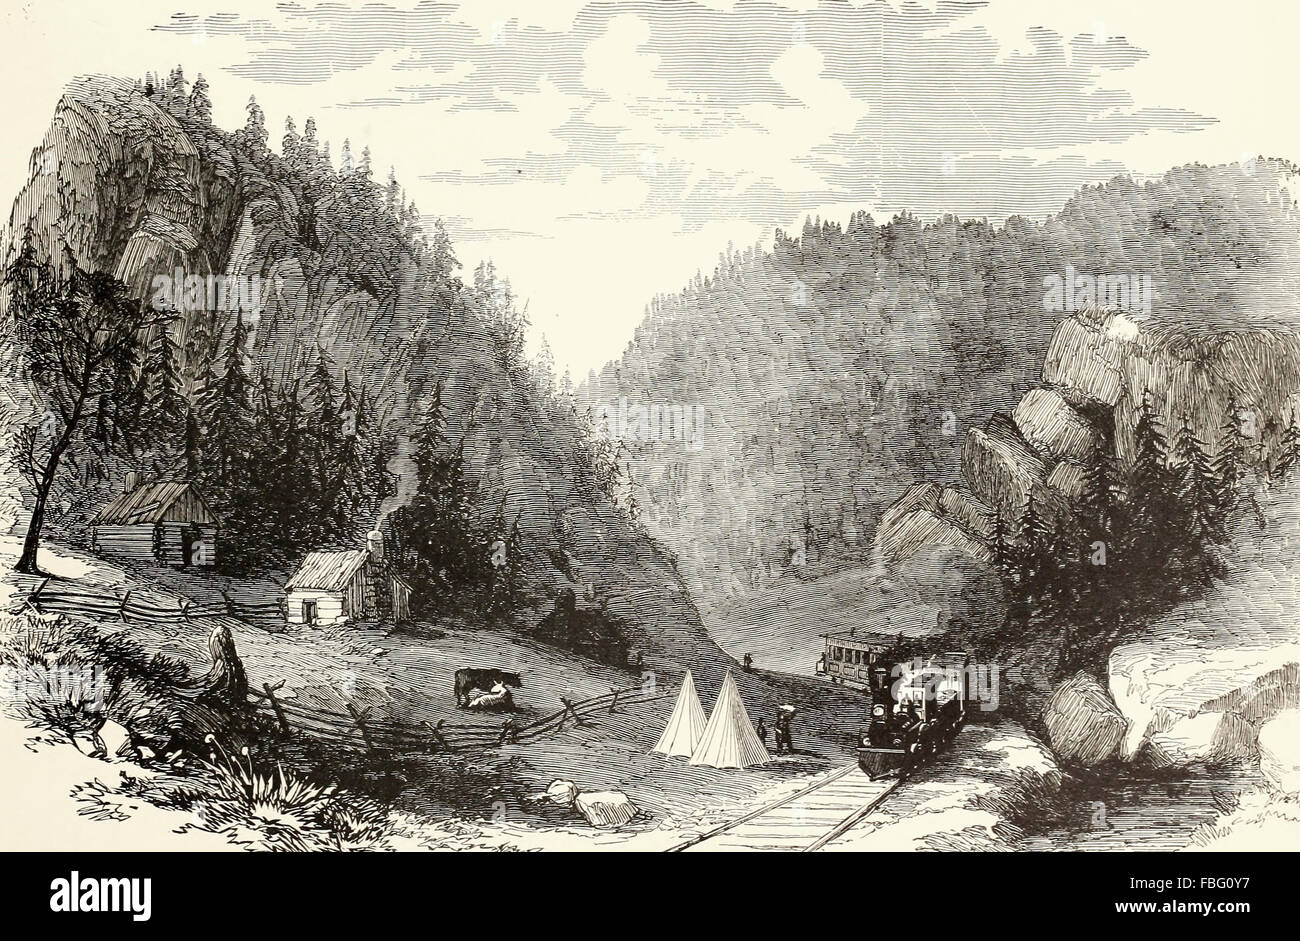 Durchgangsstraße Lücke, Virginia, einen Pass in den Bergen auf die Manassas Gap Railroad, in der Nähe von Straßburg, von General Geary gehalten. USA Bürgerkrieg Stockfoto